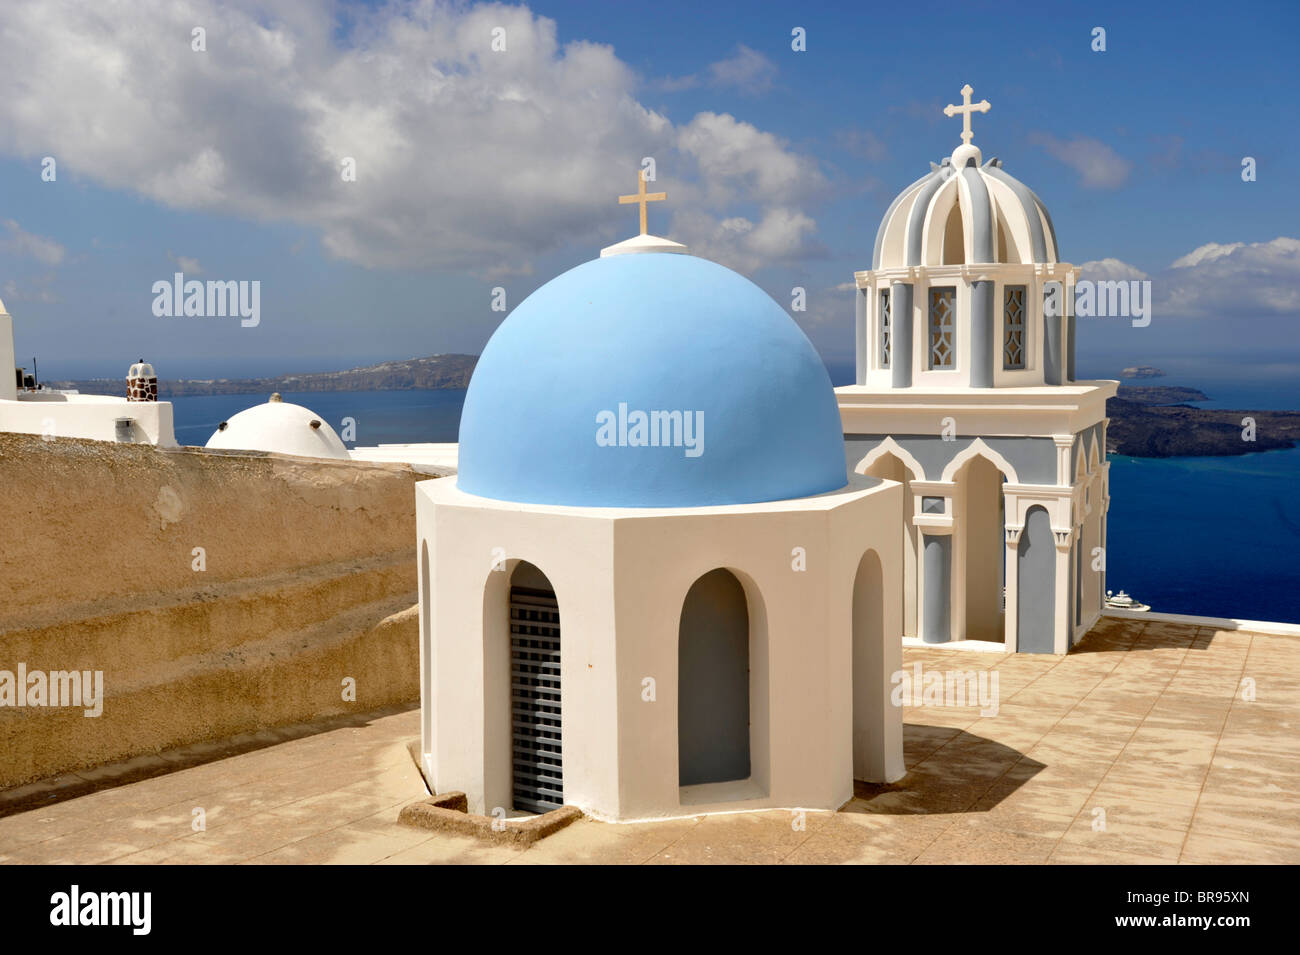 La cupola e il campanile della chiesa sull'isola greca di Santorini nelle Cicladi Foto Stock